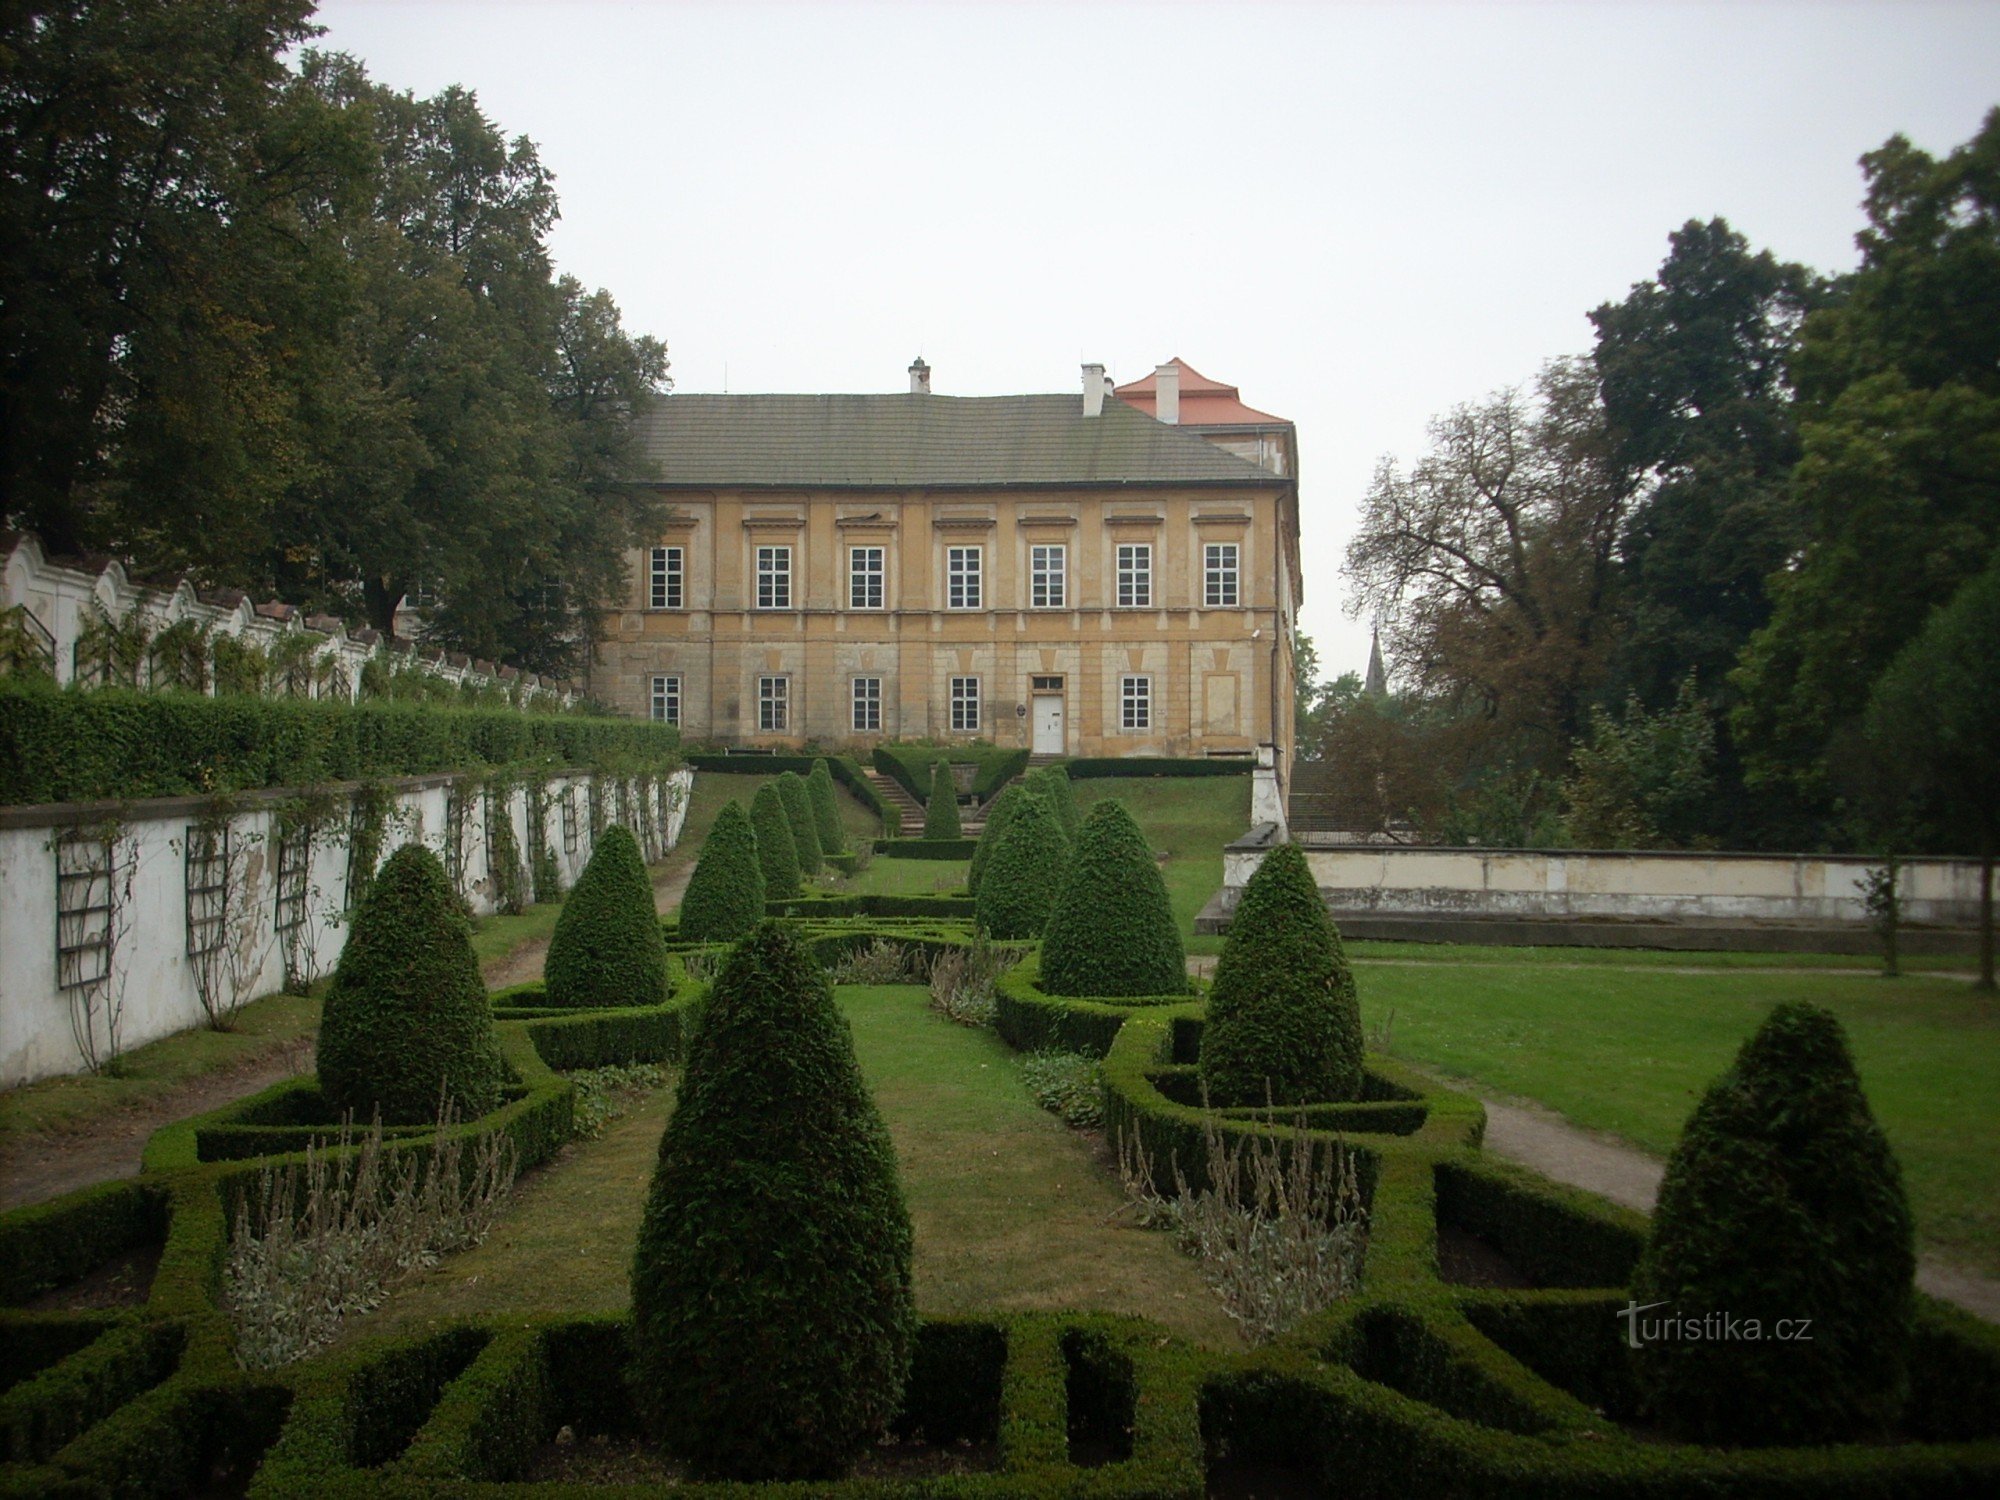 pogled na grad z grajskimi vrtovi